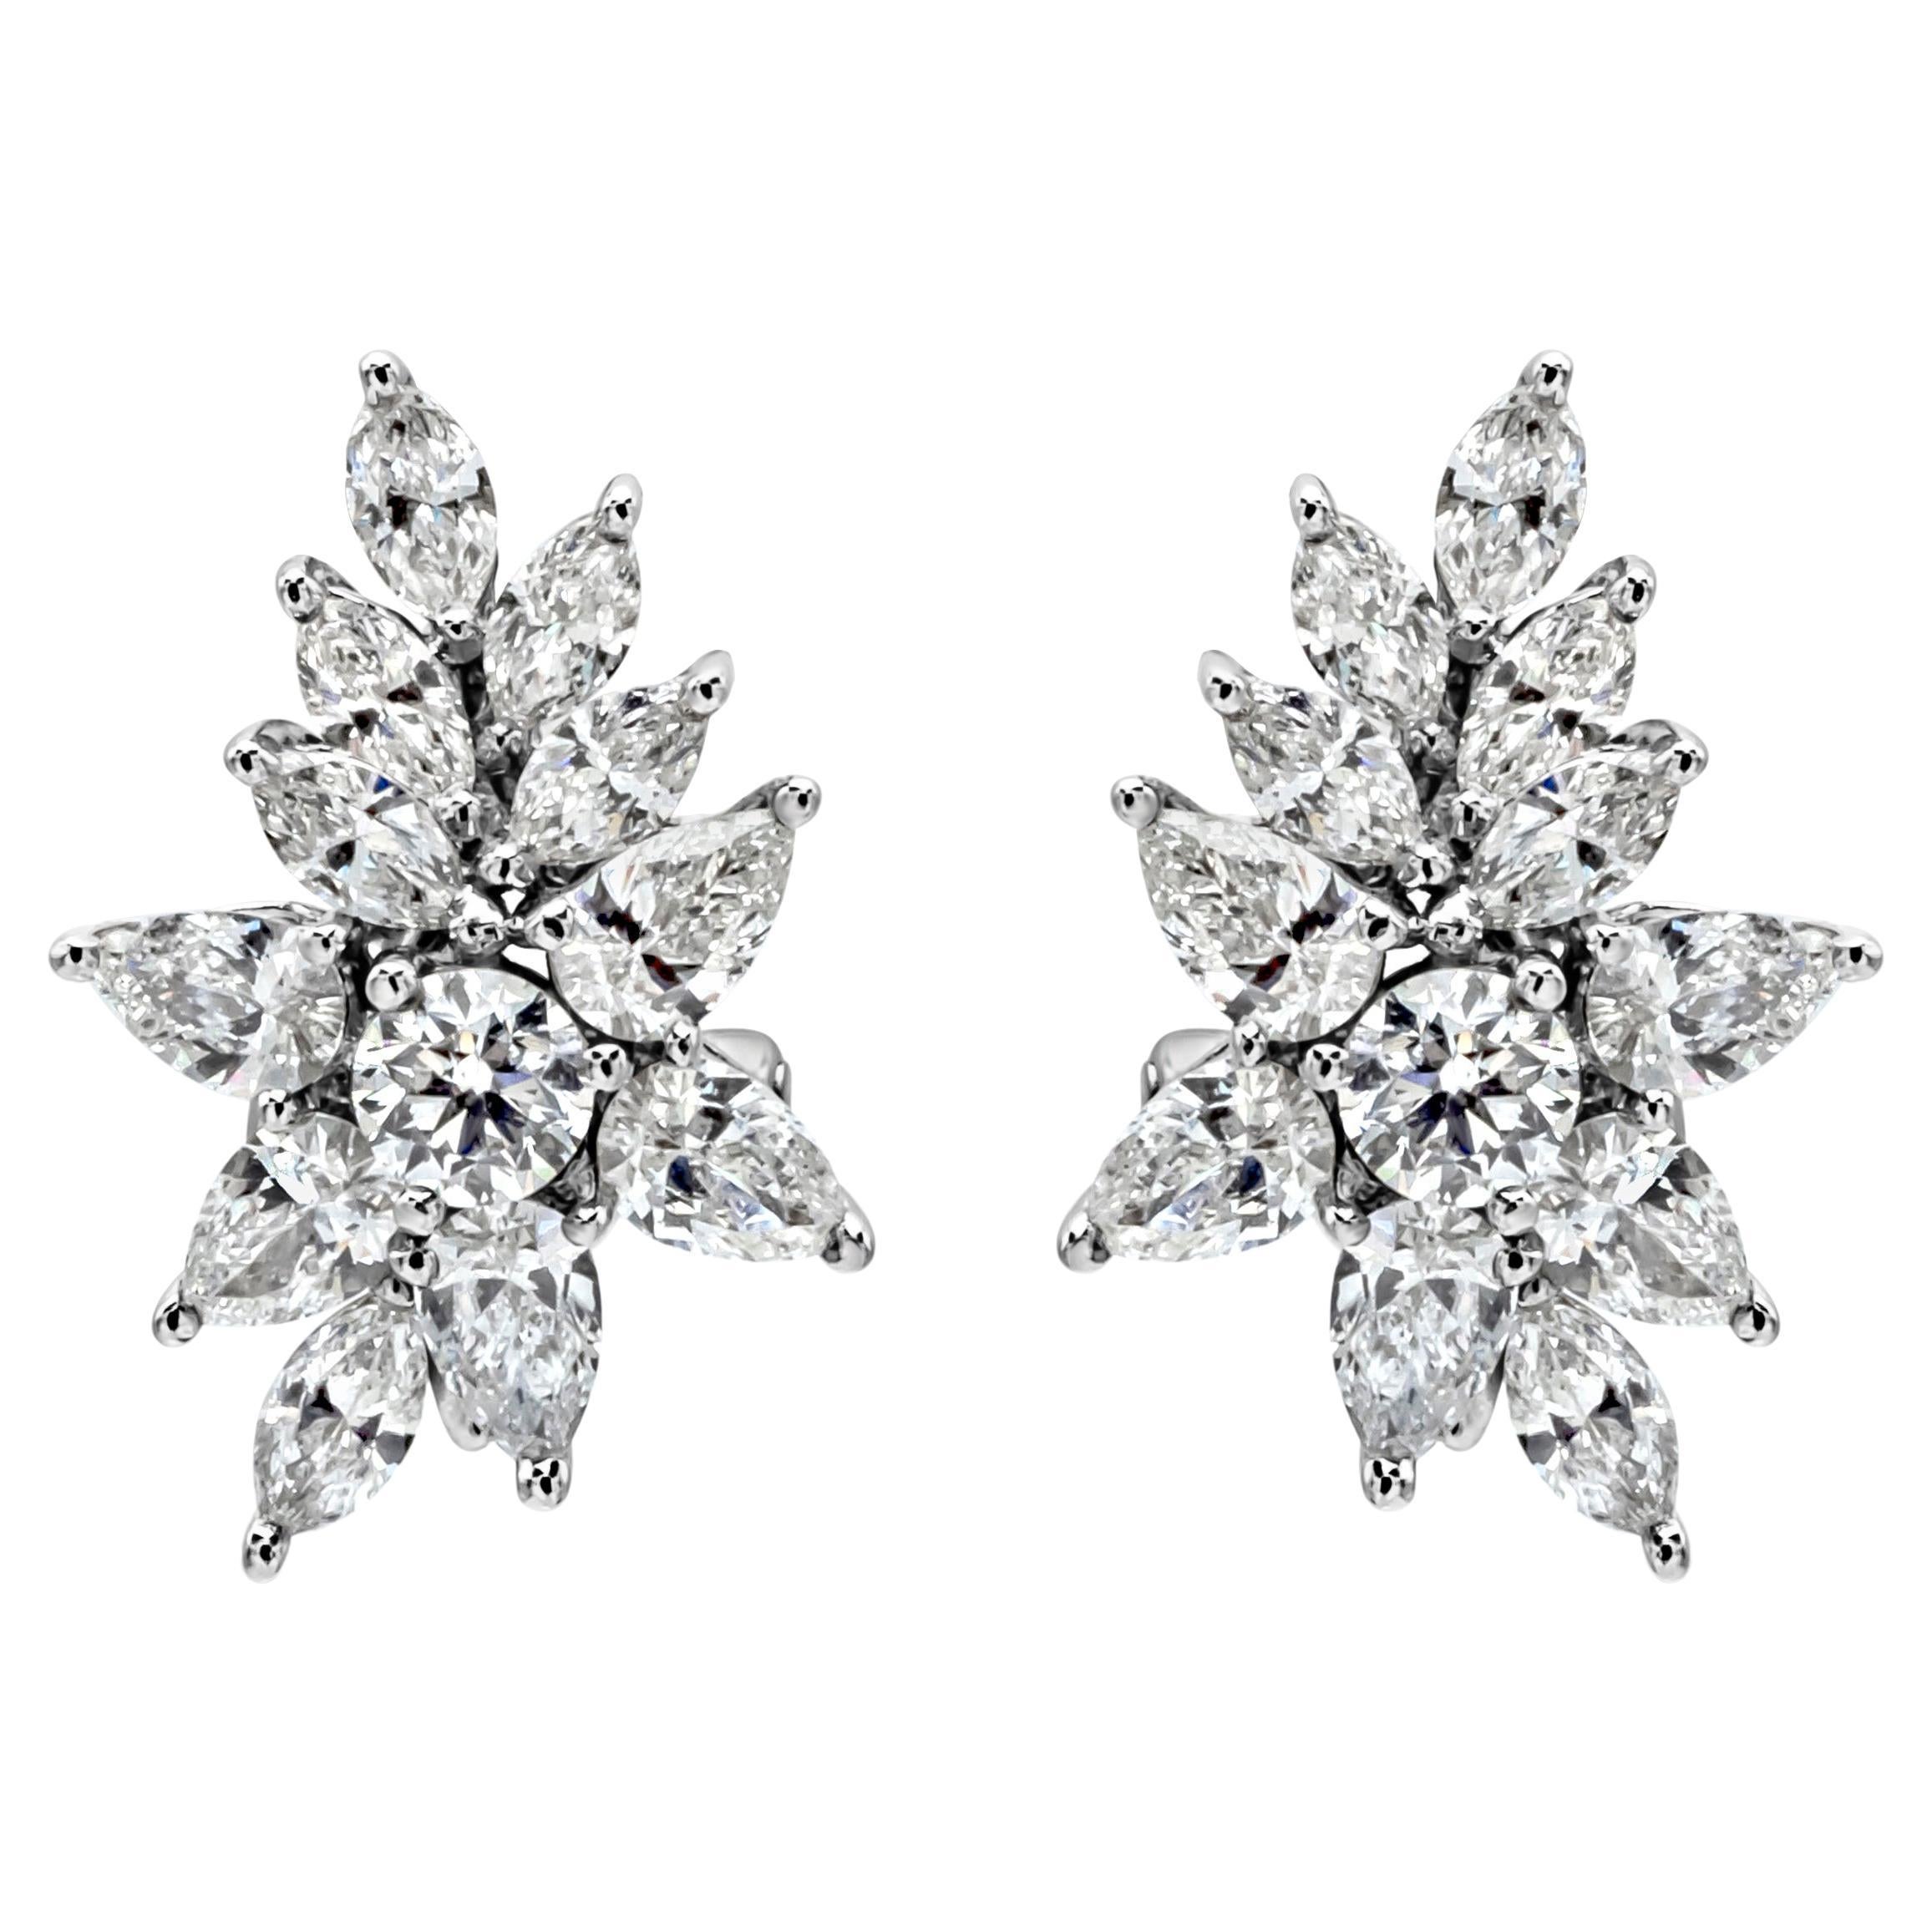 Roman Malakov 3.21 Carats Total Fancy Shape Diamonds Cluster Earrings